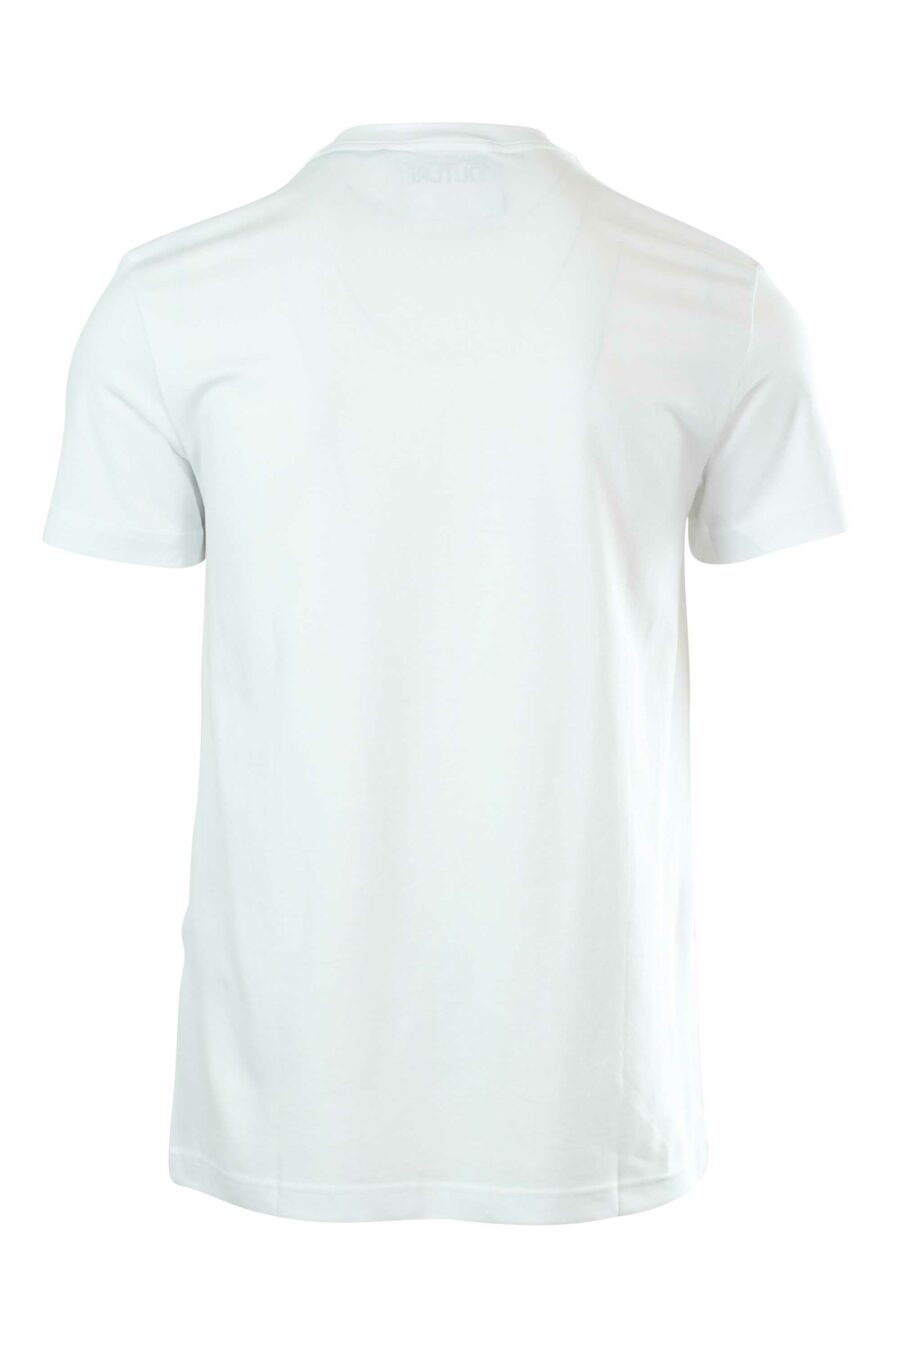 T-shirt branca com logótipo na gola - 8052019237092 2